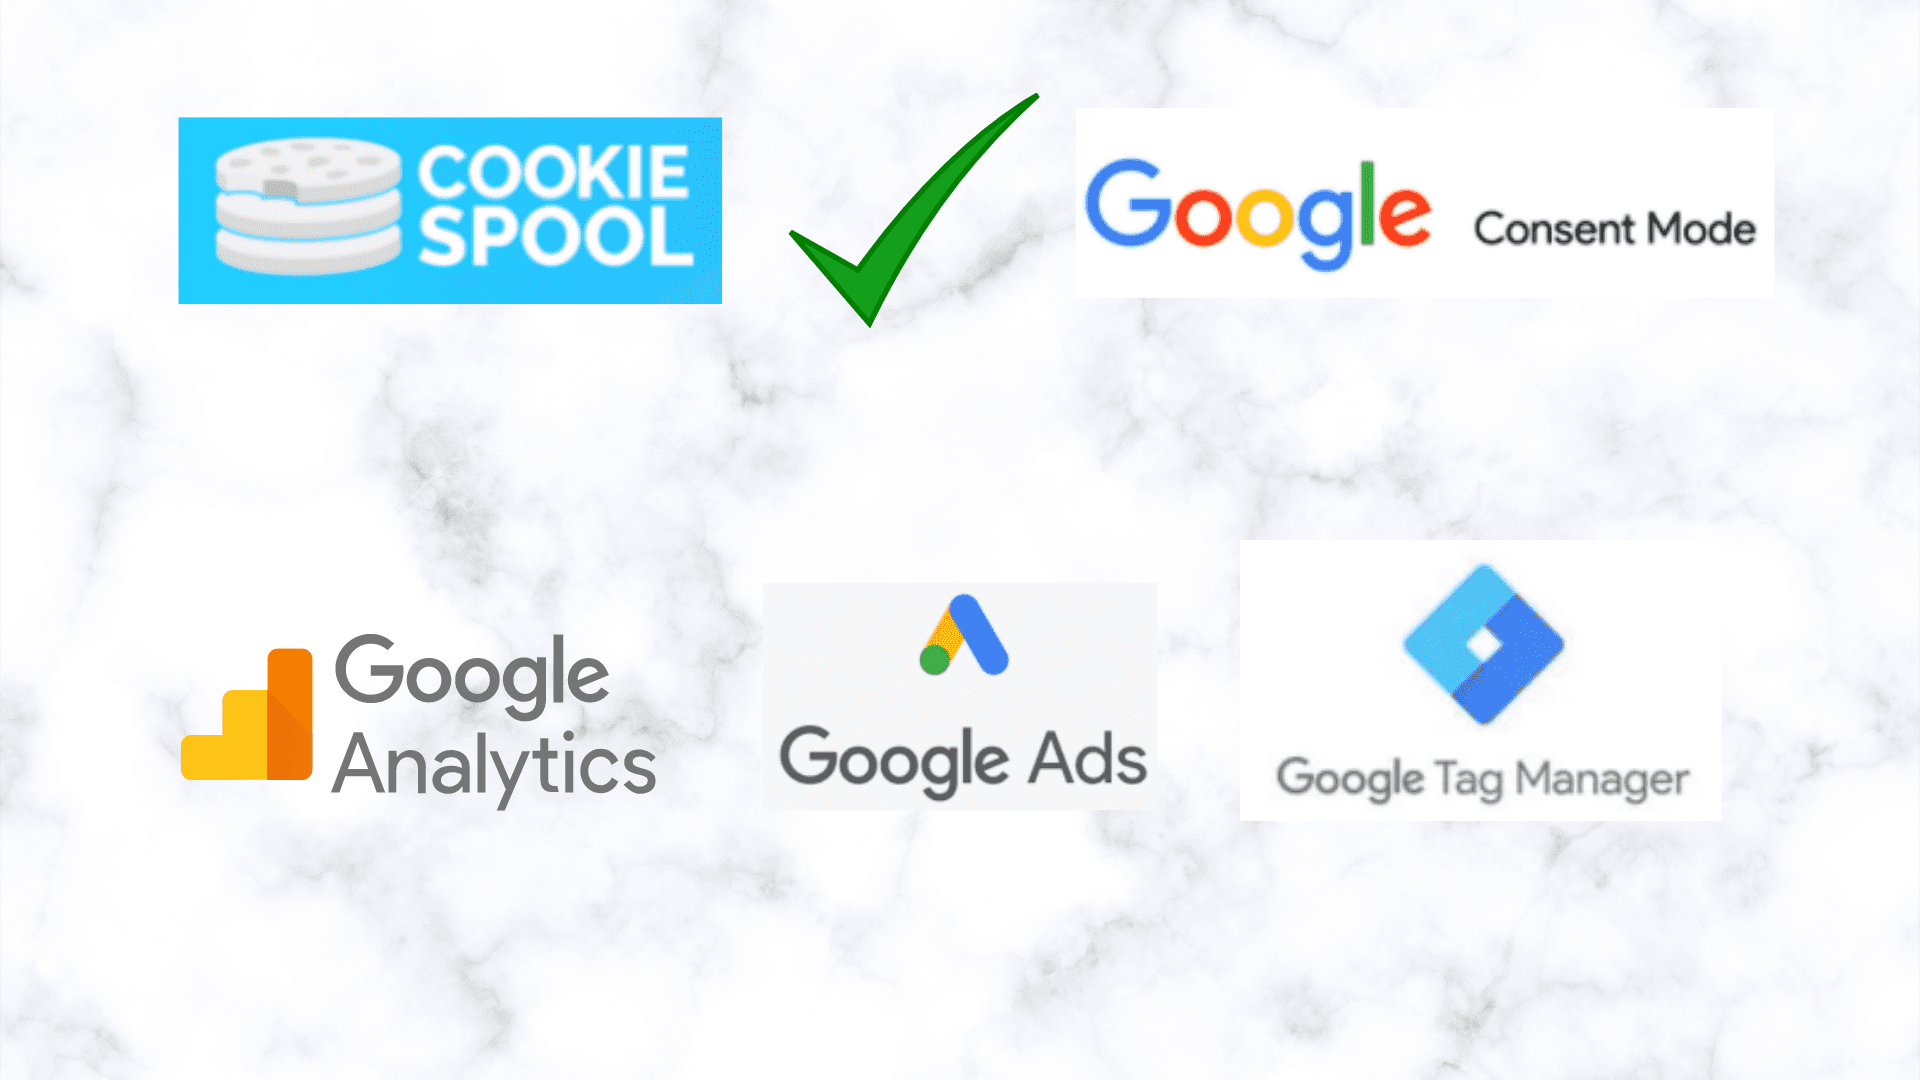 Google Consent Mode ile Cookiespool Çerez Açık Rıza Yönetim Platformu Entegrasyonu  